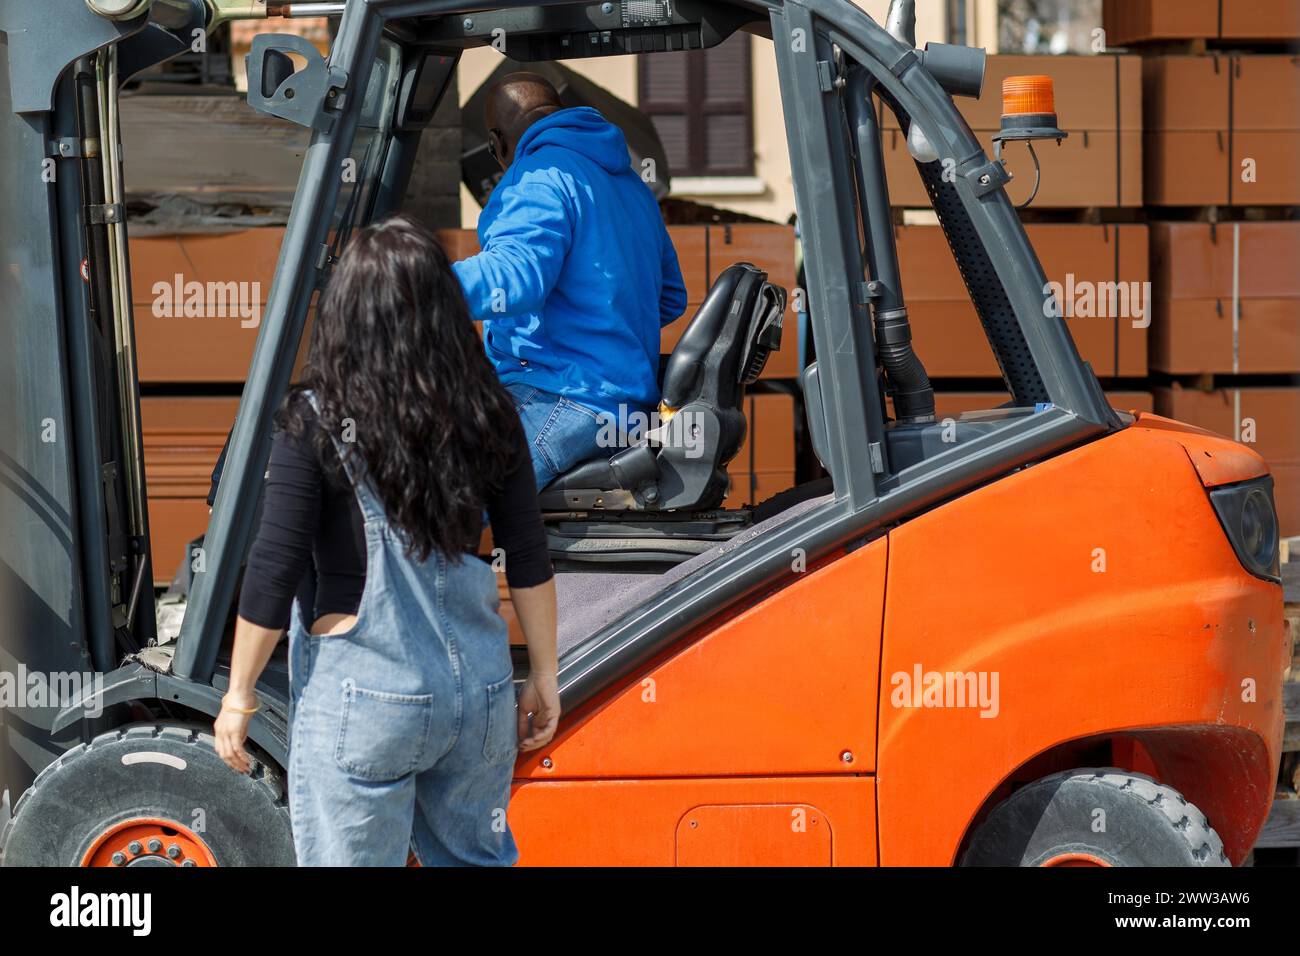 Un homme conduisant un chariot élévateur tandis qu'une femme en vêtements de travail observe Banque D'Images